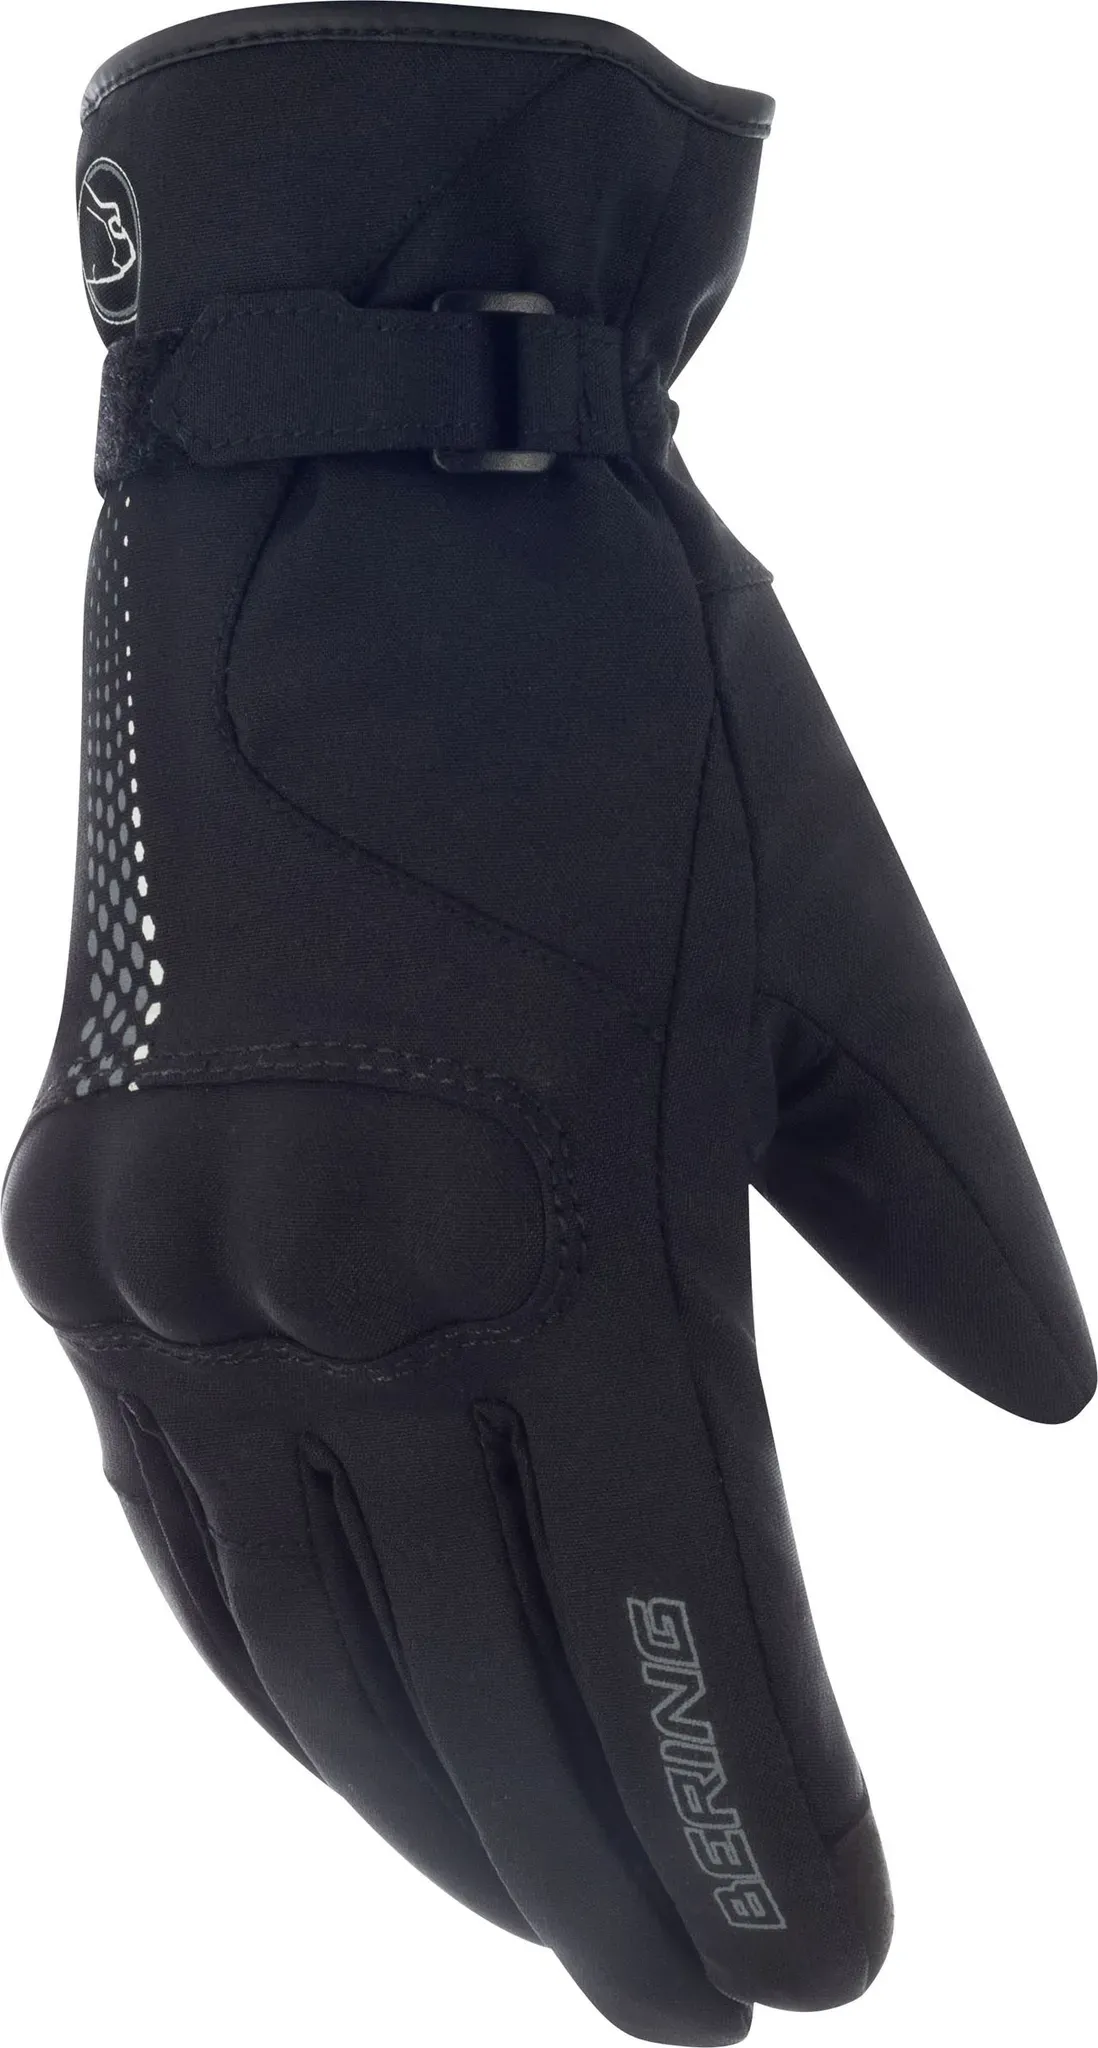 Bering Carmen, gants imperméables pour femmes - Noir/Gris - 9